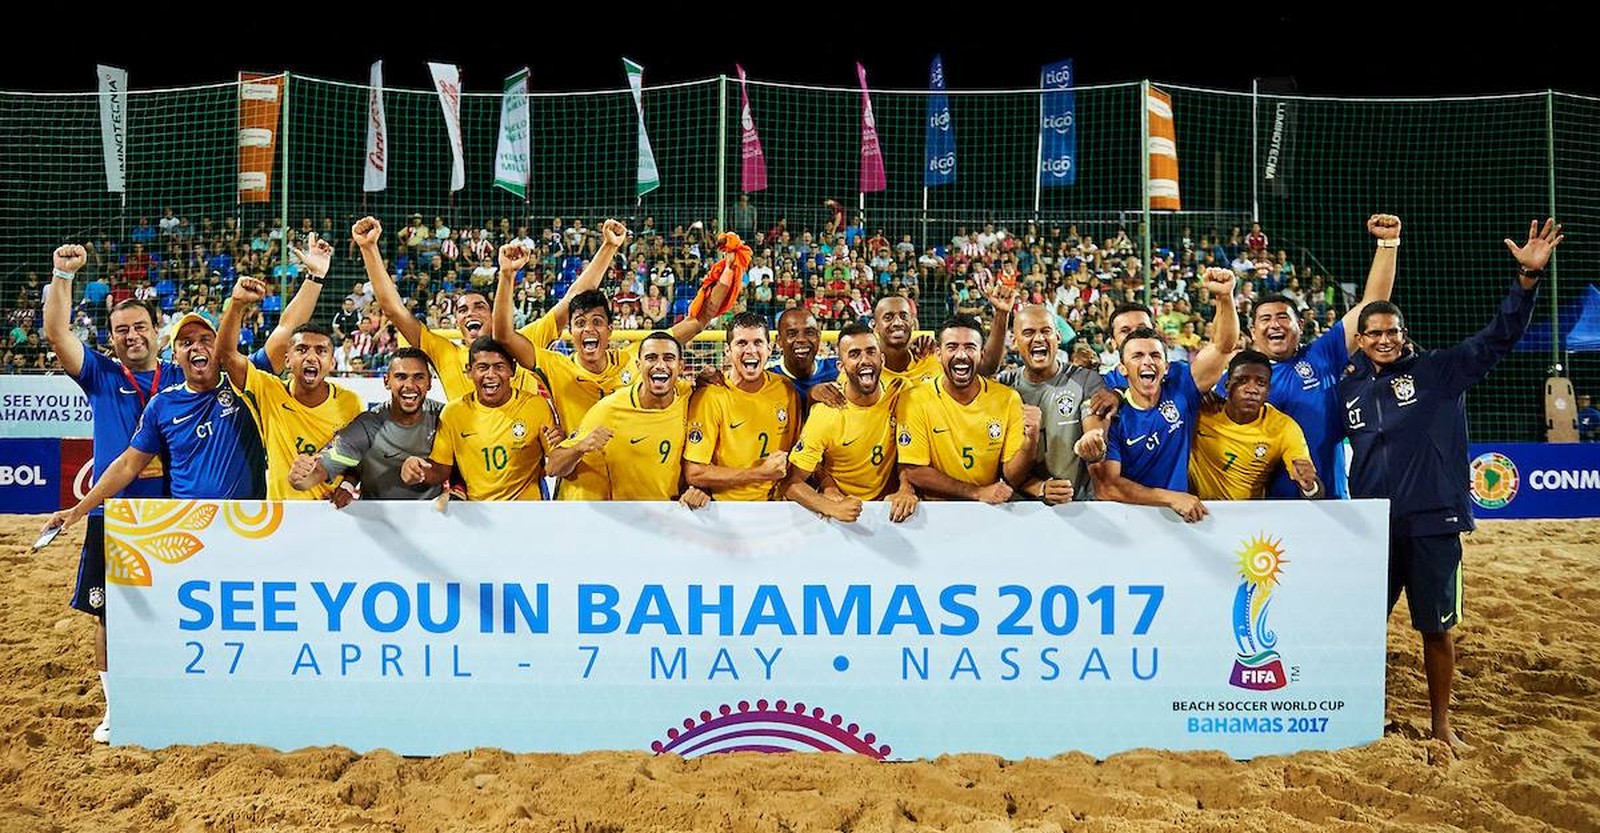 Copa do Mundo de Beach Soccer Bahamas 2017